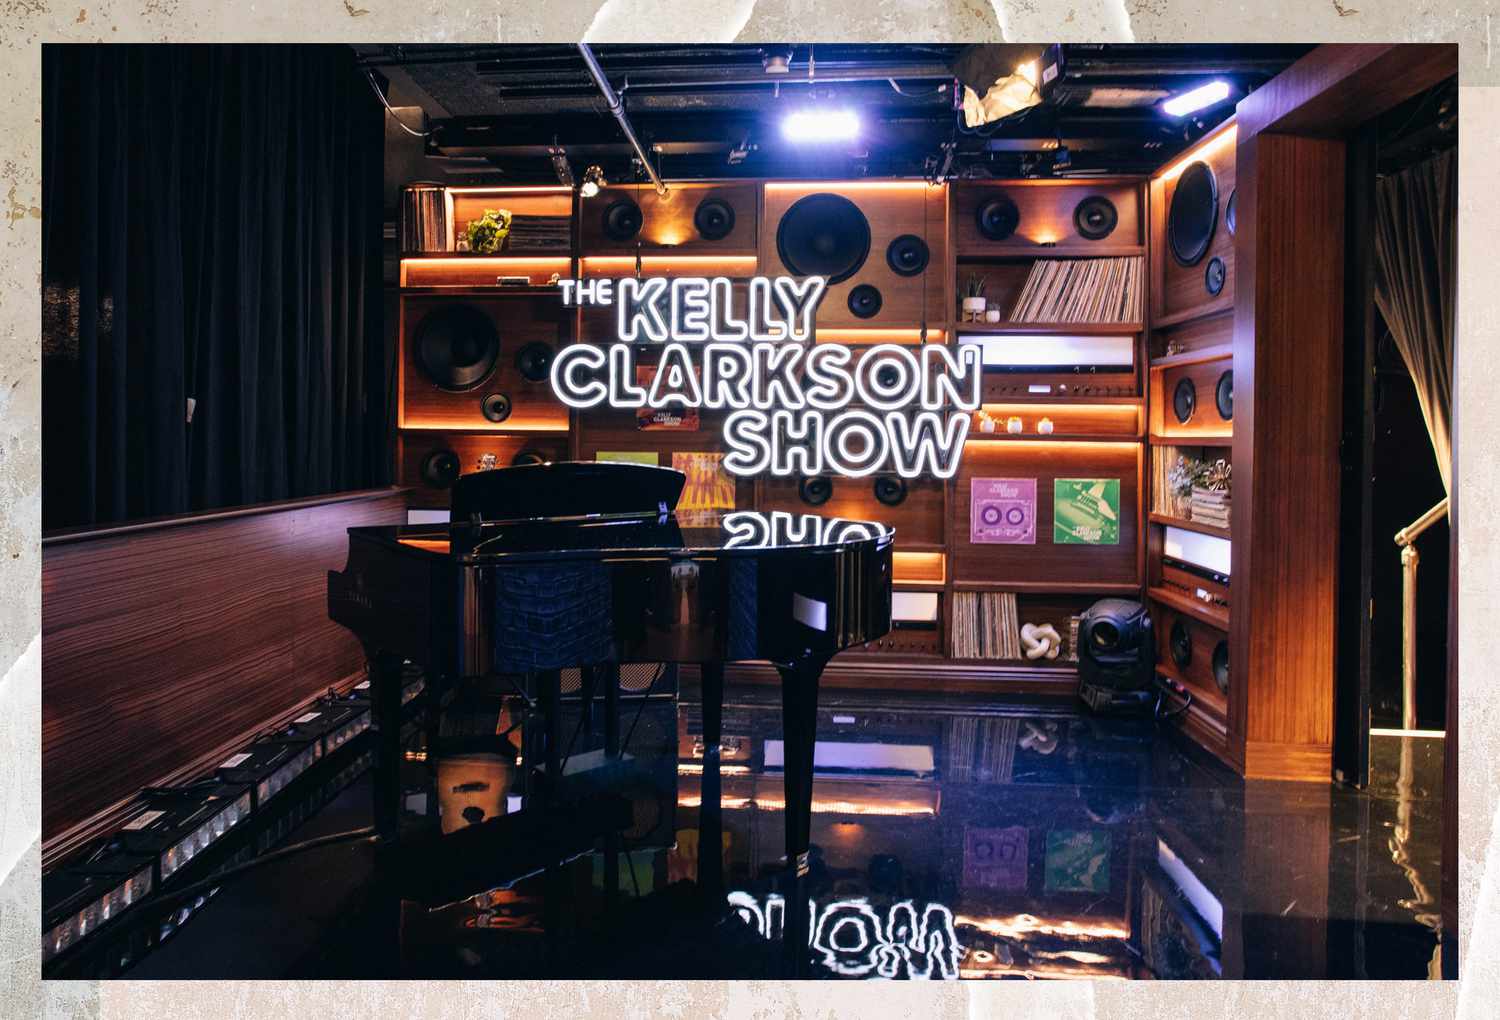 El piano de cola de Kelly Clarkson en el plató de su talk show